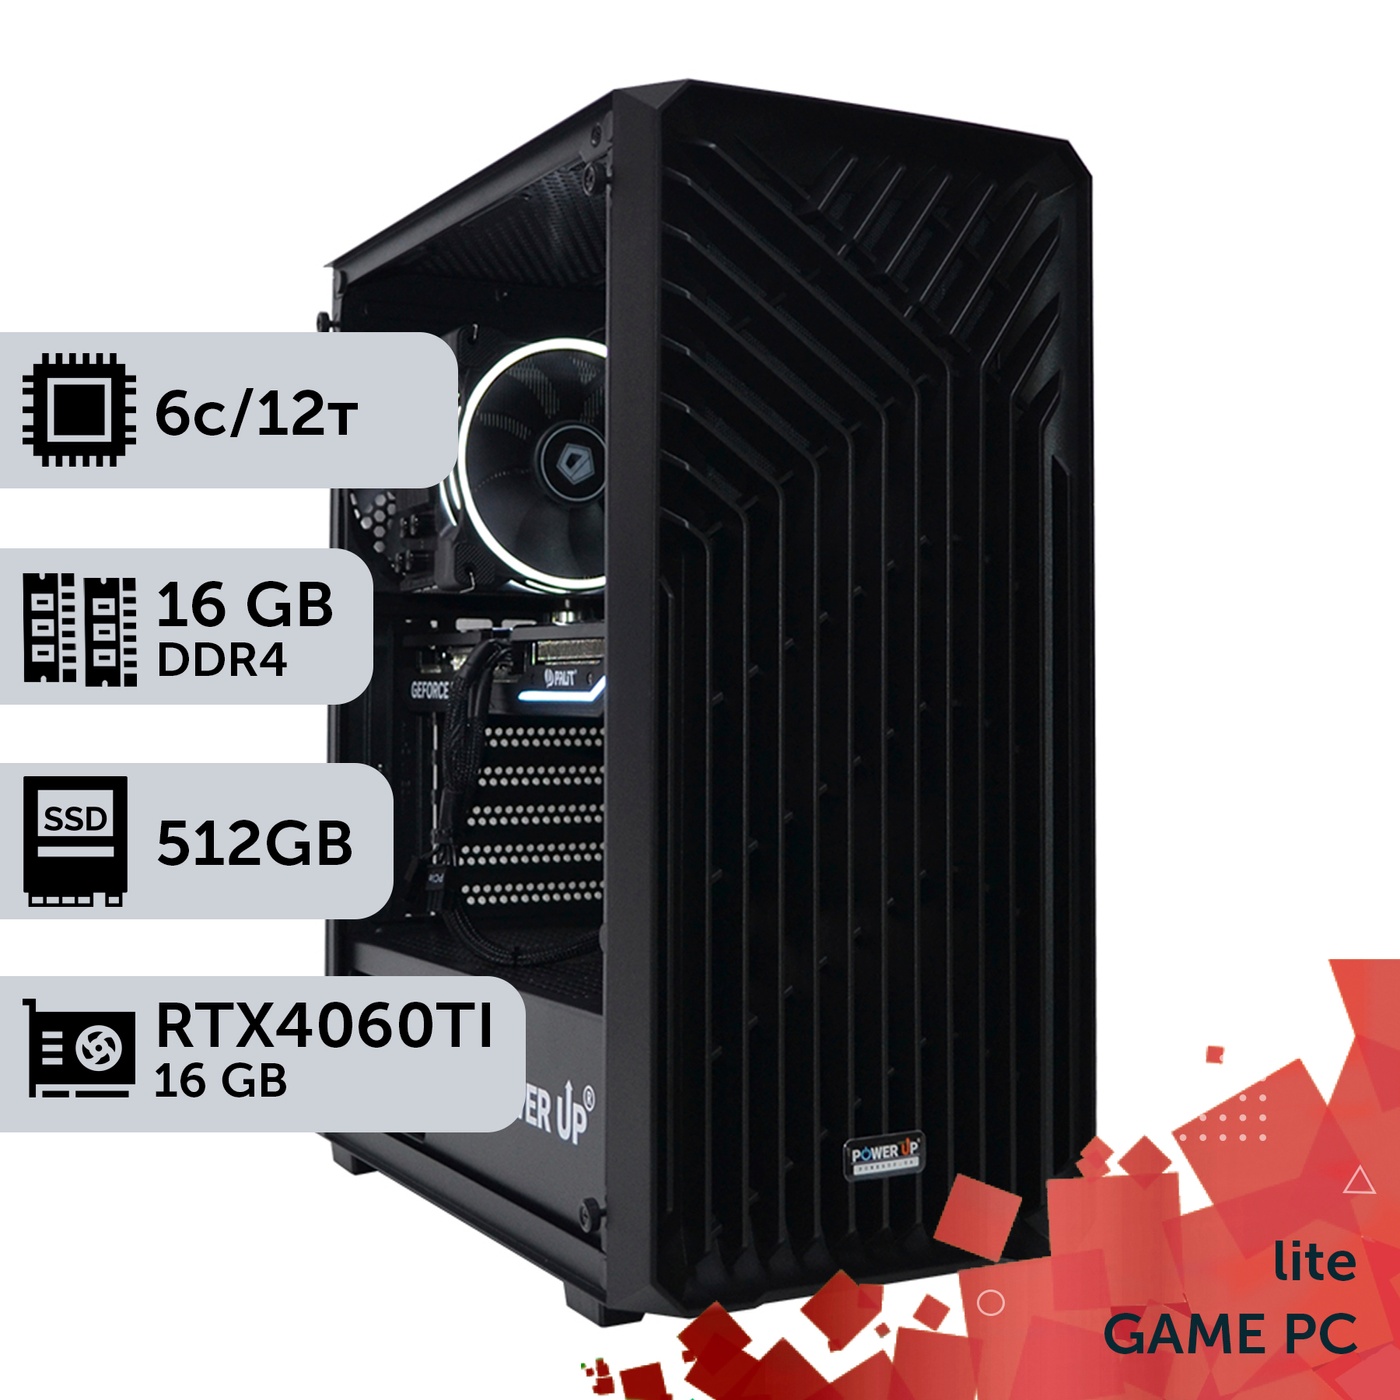 Ігровий комп'ютер GamePC Lite #246 Ryzen 5 4500/16 GB/SSD 512GB/GeForce RTX 4060Ti 16GB